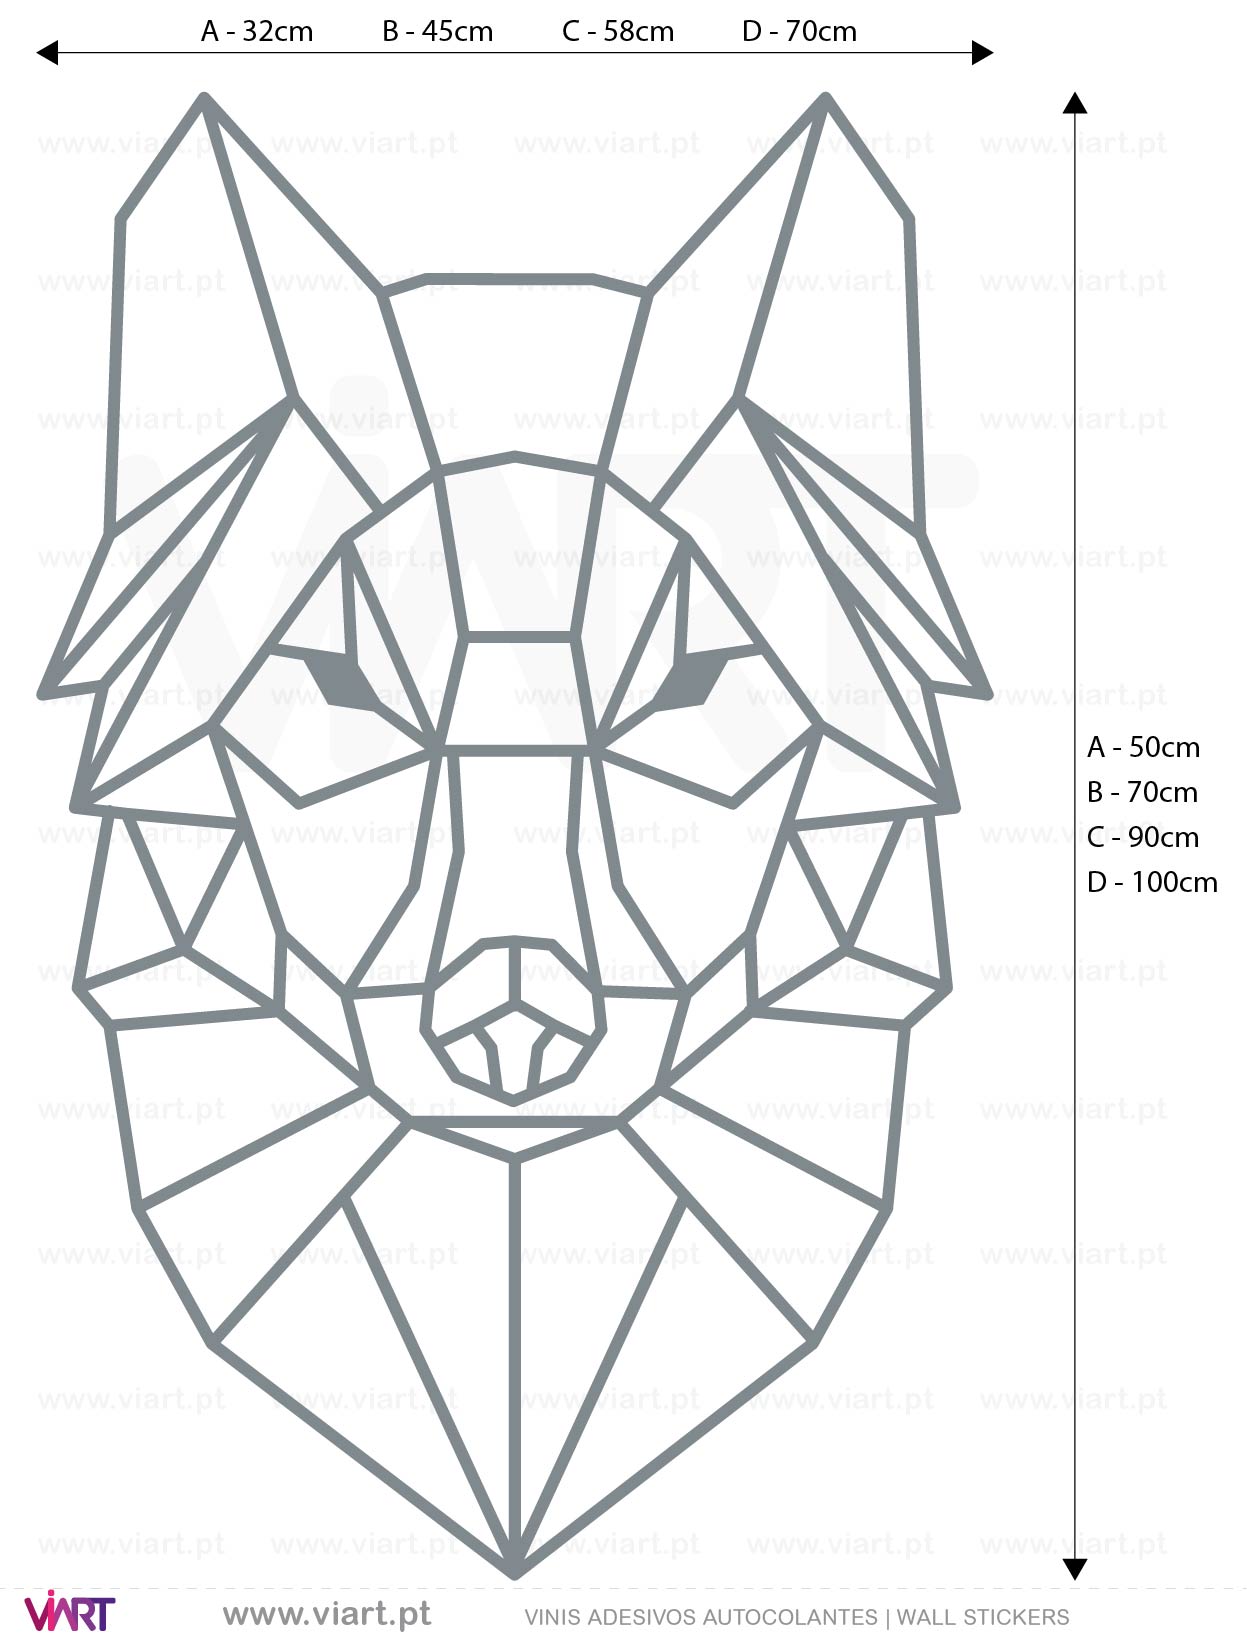 Viart - Vinis autocolantes decorativos - Cabeça de Lobo! Origami! Medidas